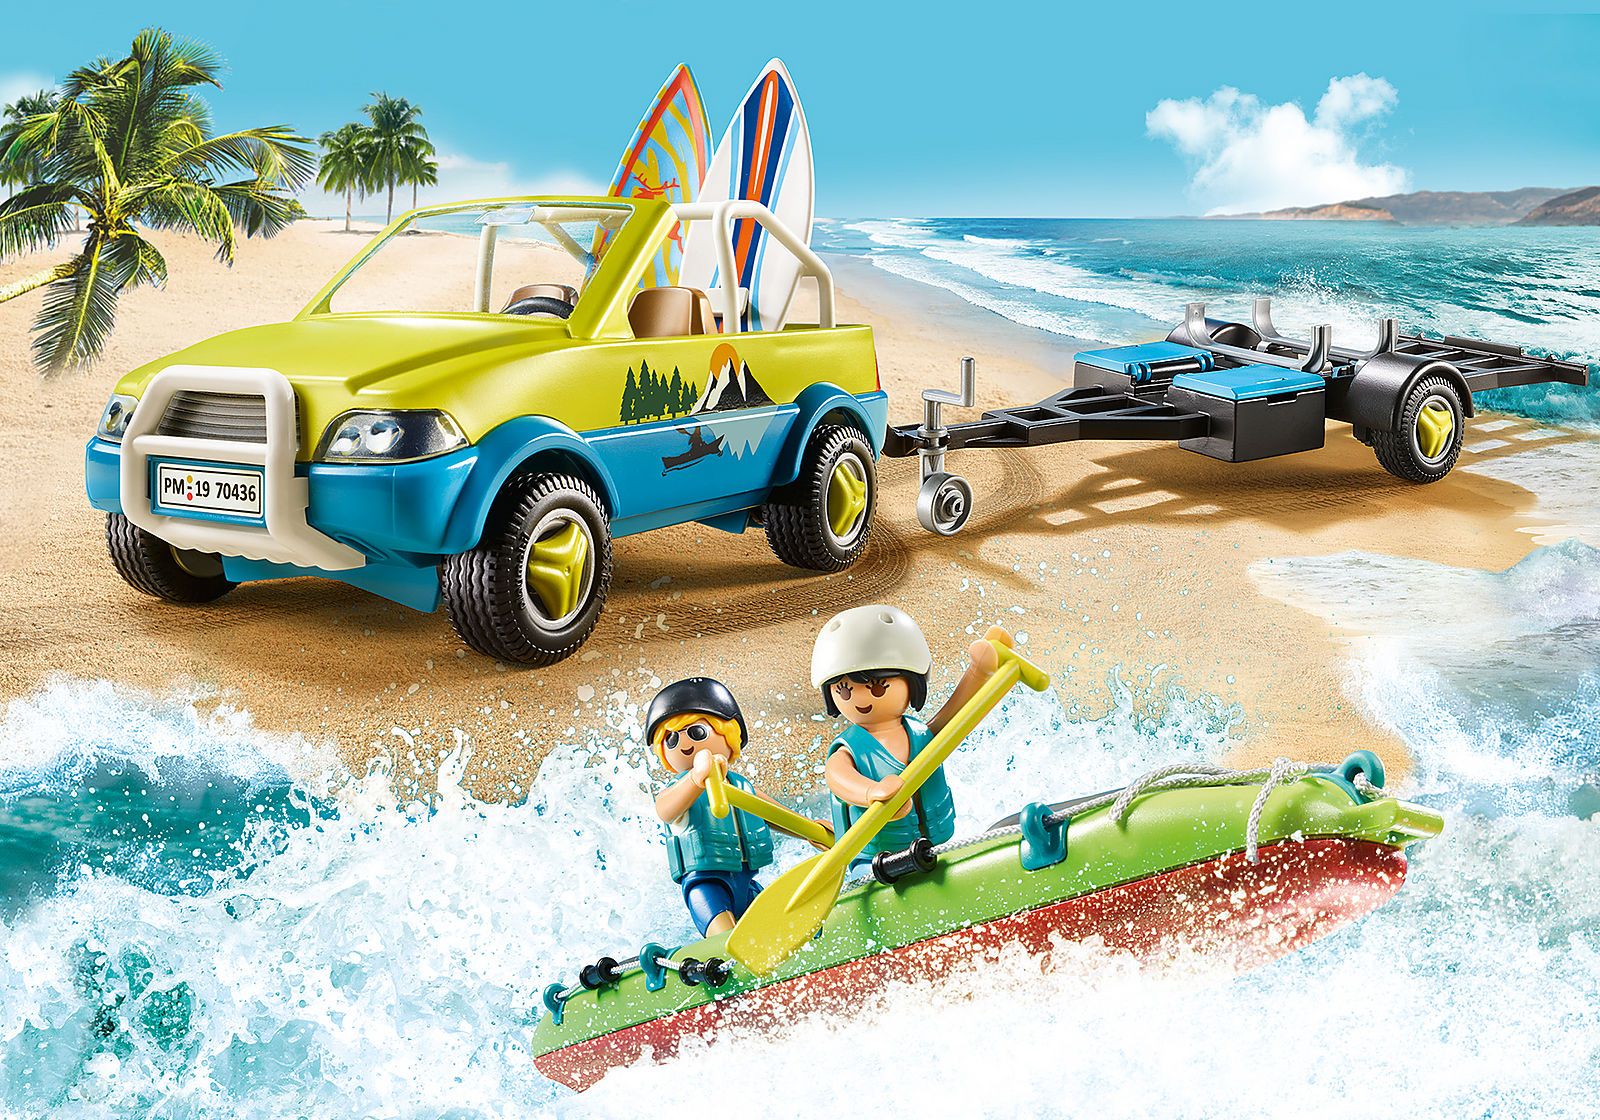 Playmobil Family Fun - Αυτοκίνητο Mε Aνοιχτή Oροφή Kαι Kανό 70436